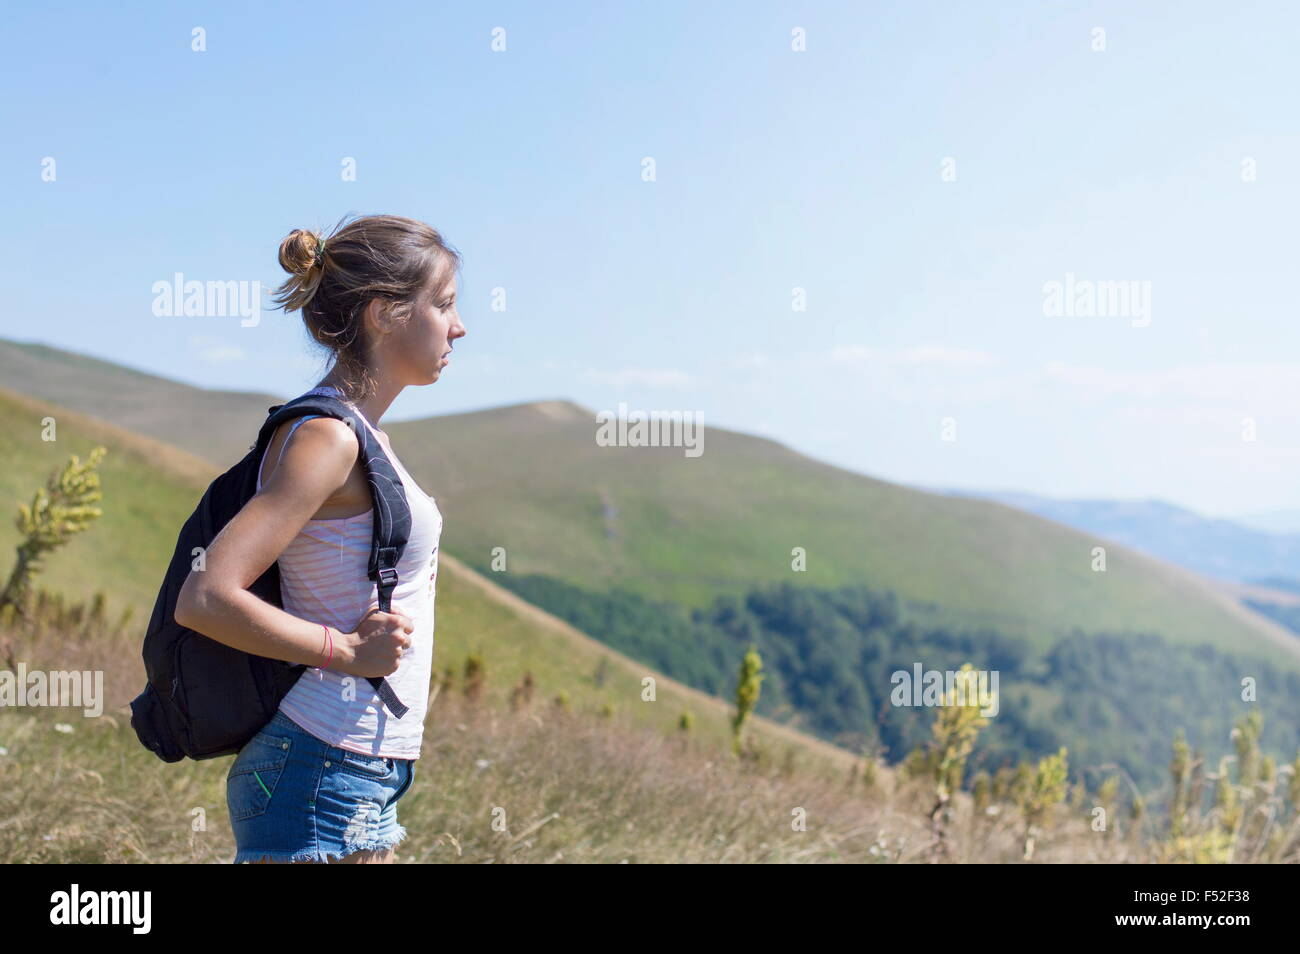 Giovane, attraente ragazza con uno zaino sulla schiena, stando in piedi alla montagna. Il verde dei prati e montagne maestose in backgr Foto Stock